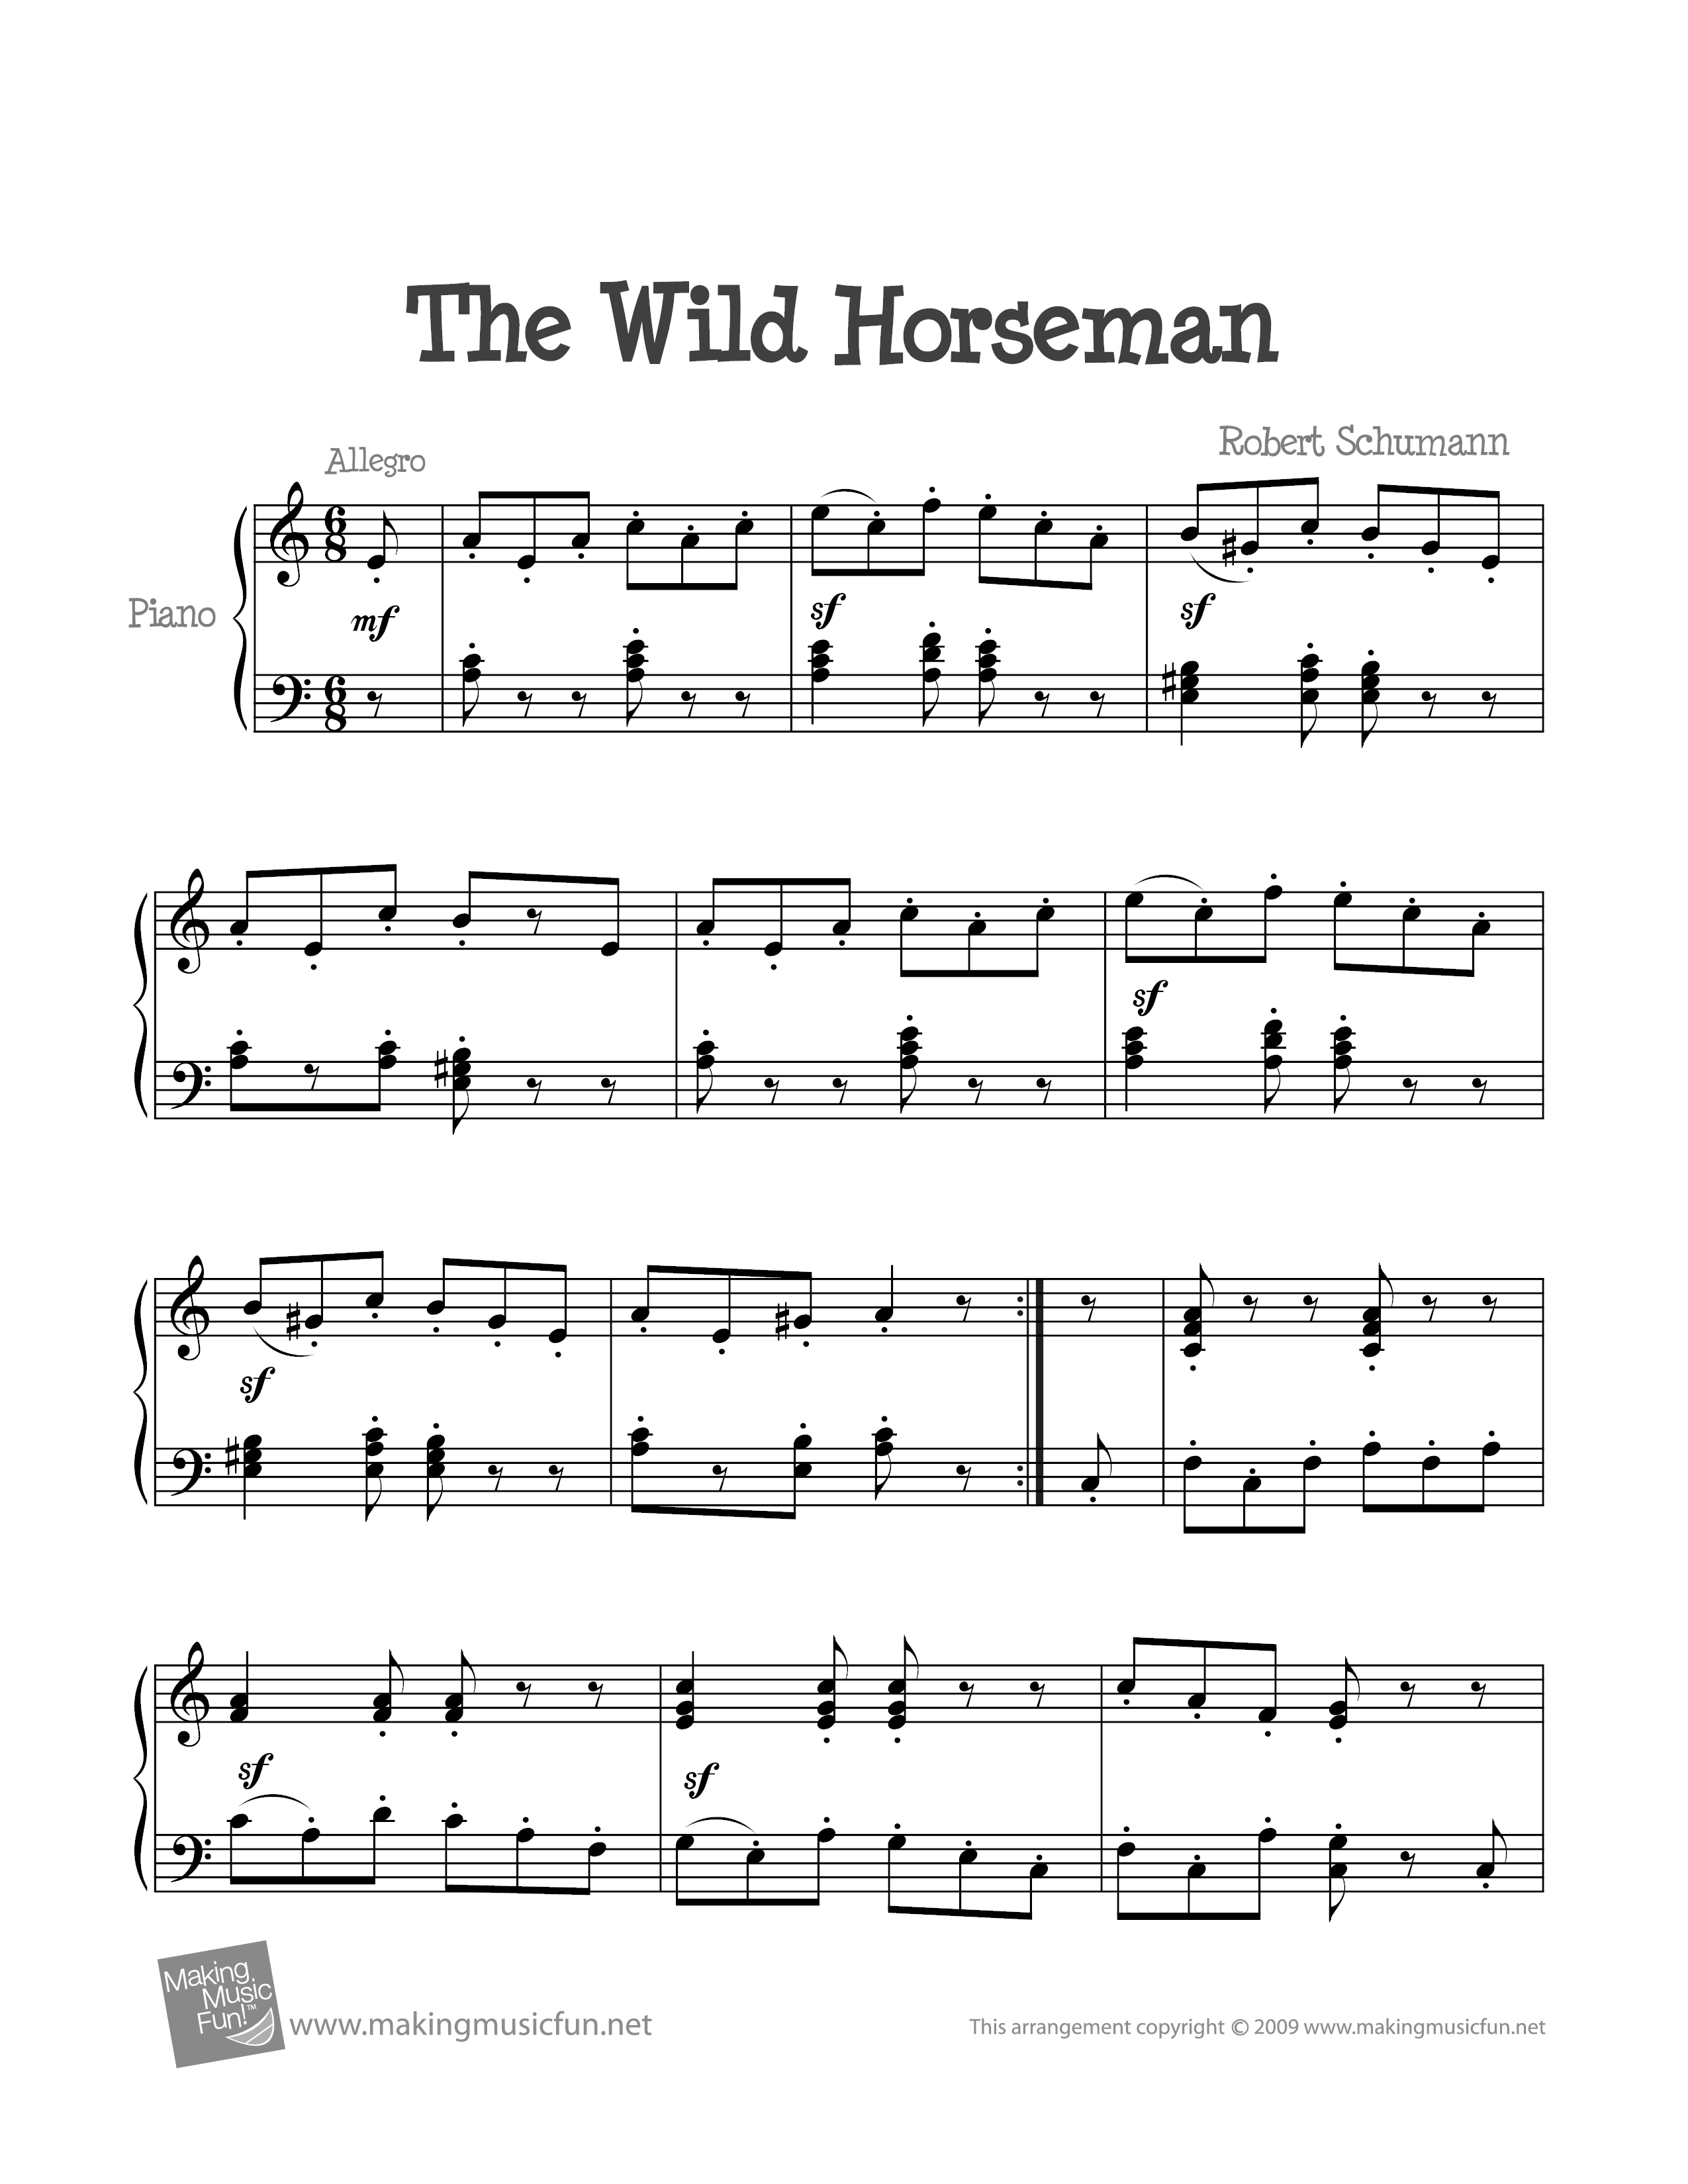 The Wild Horseman Score